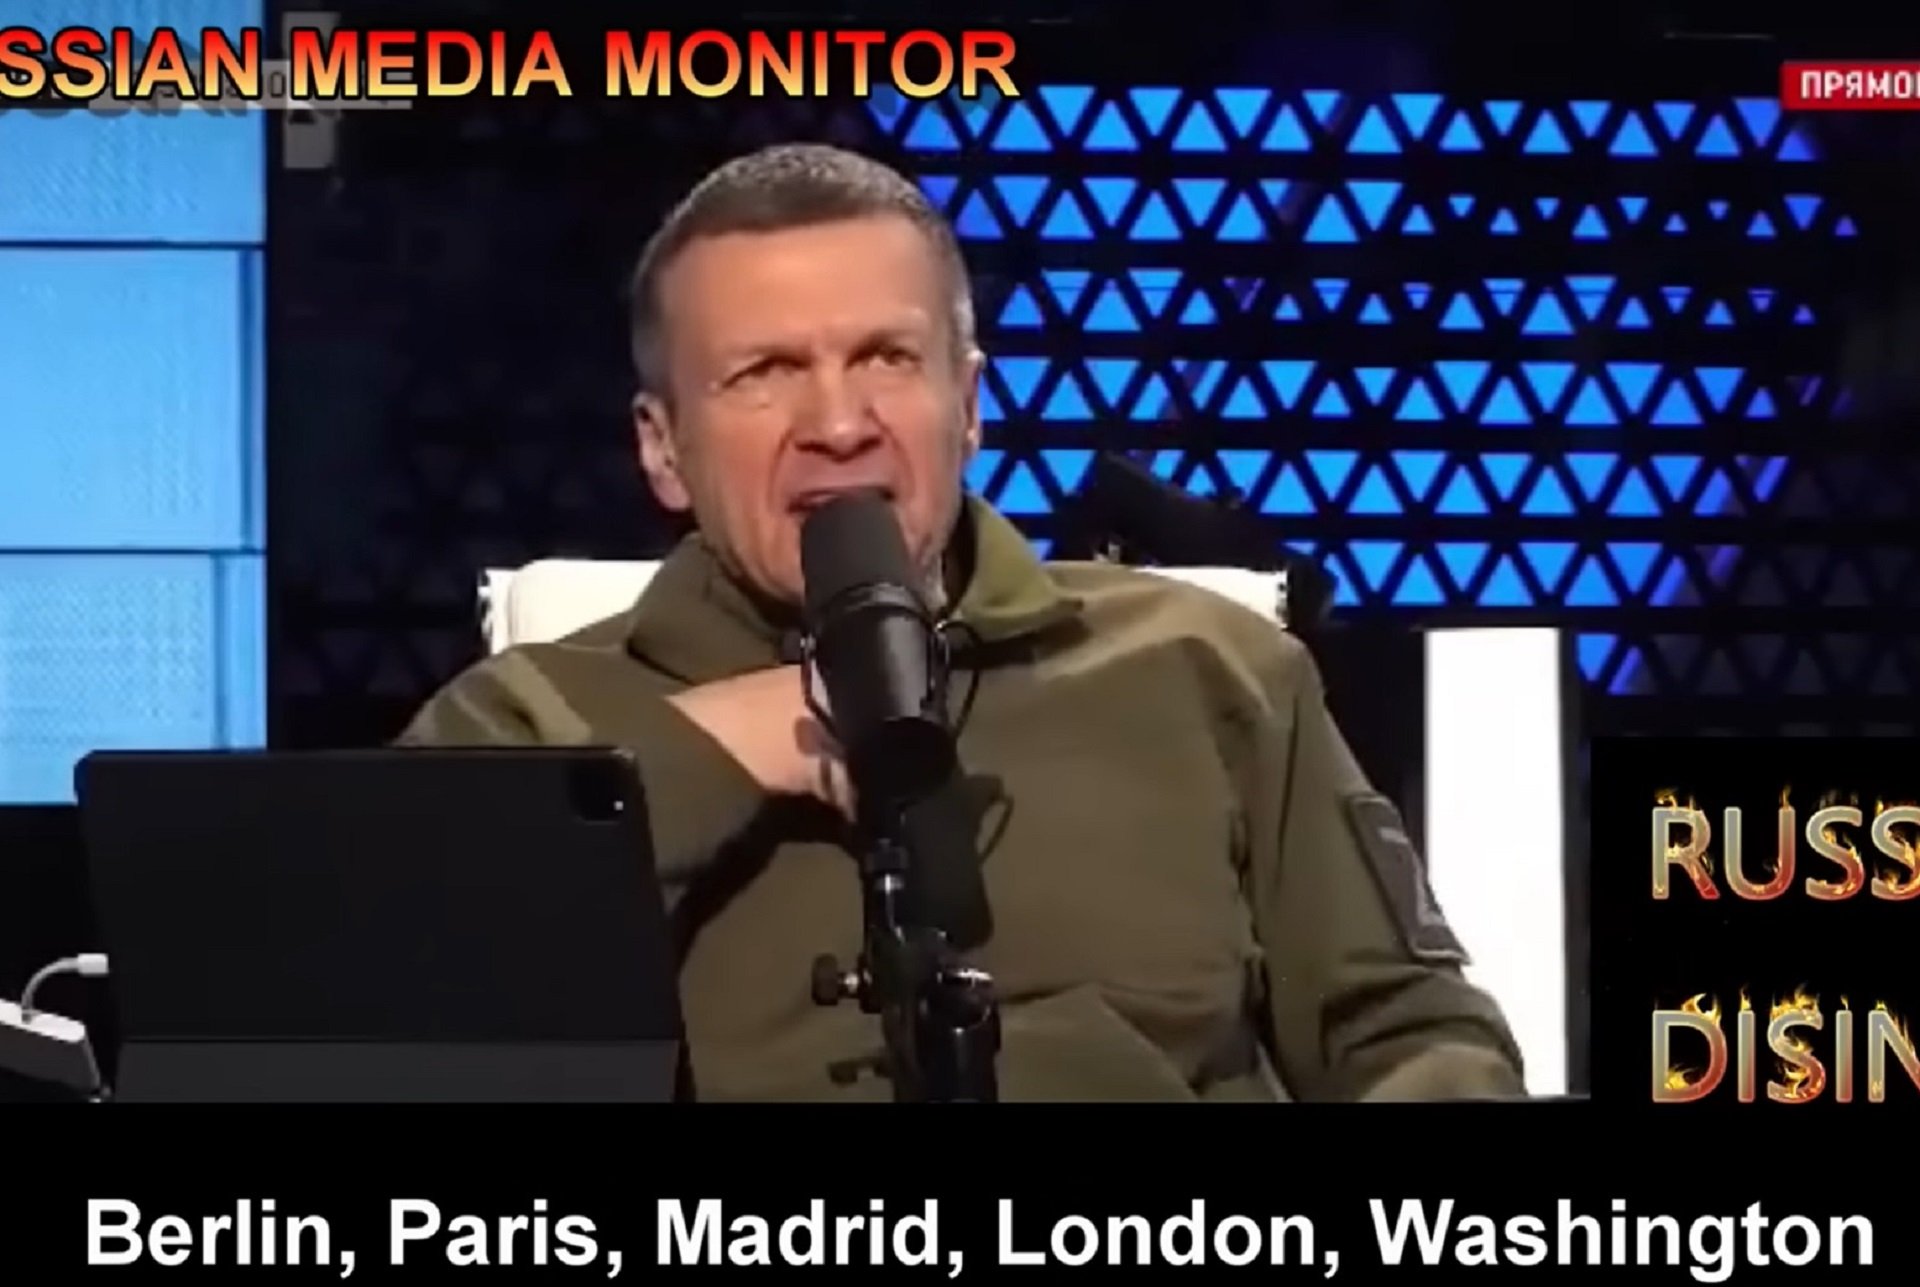 El presentador estrella de la TV russa demana "calar foc a Madrid" i altres "capitals nazis"